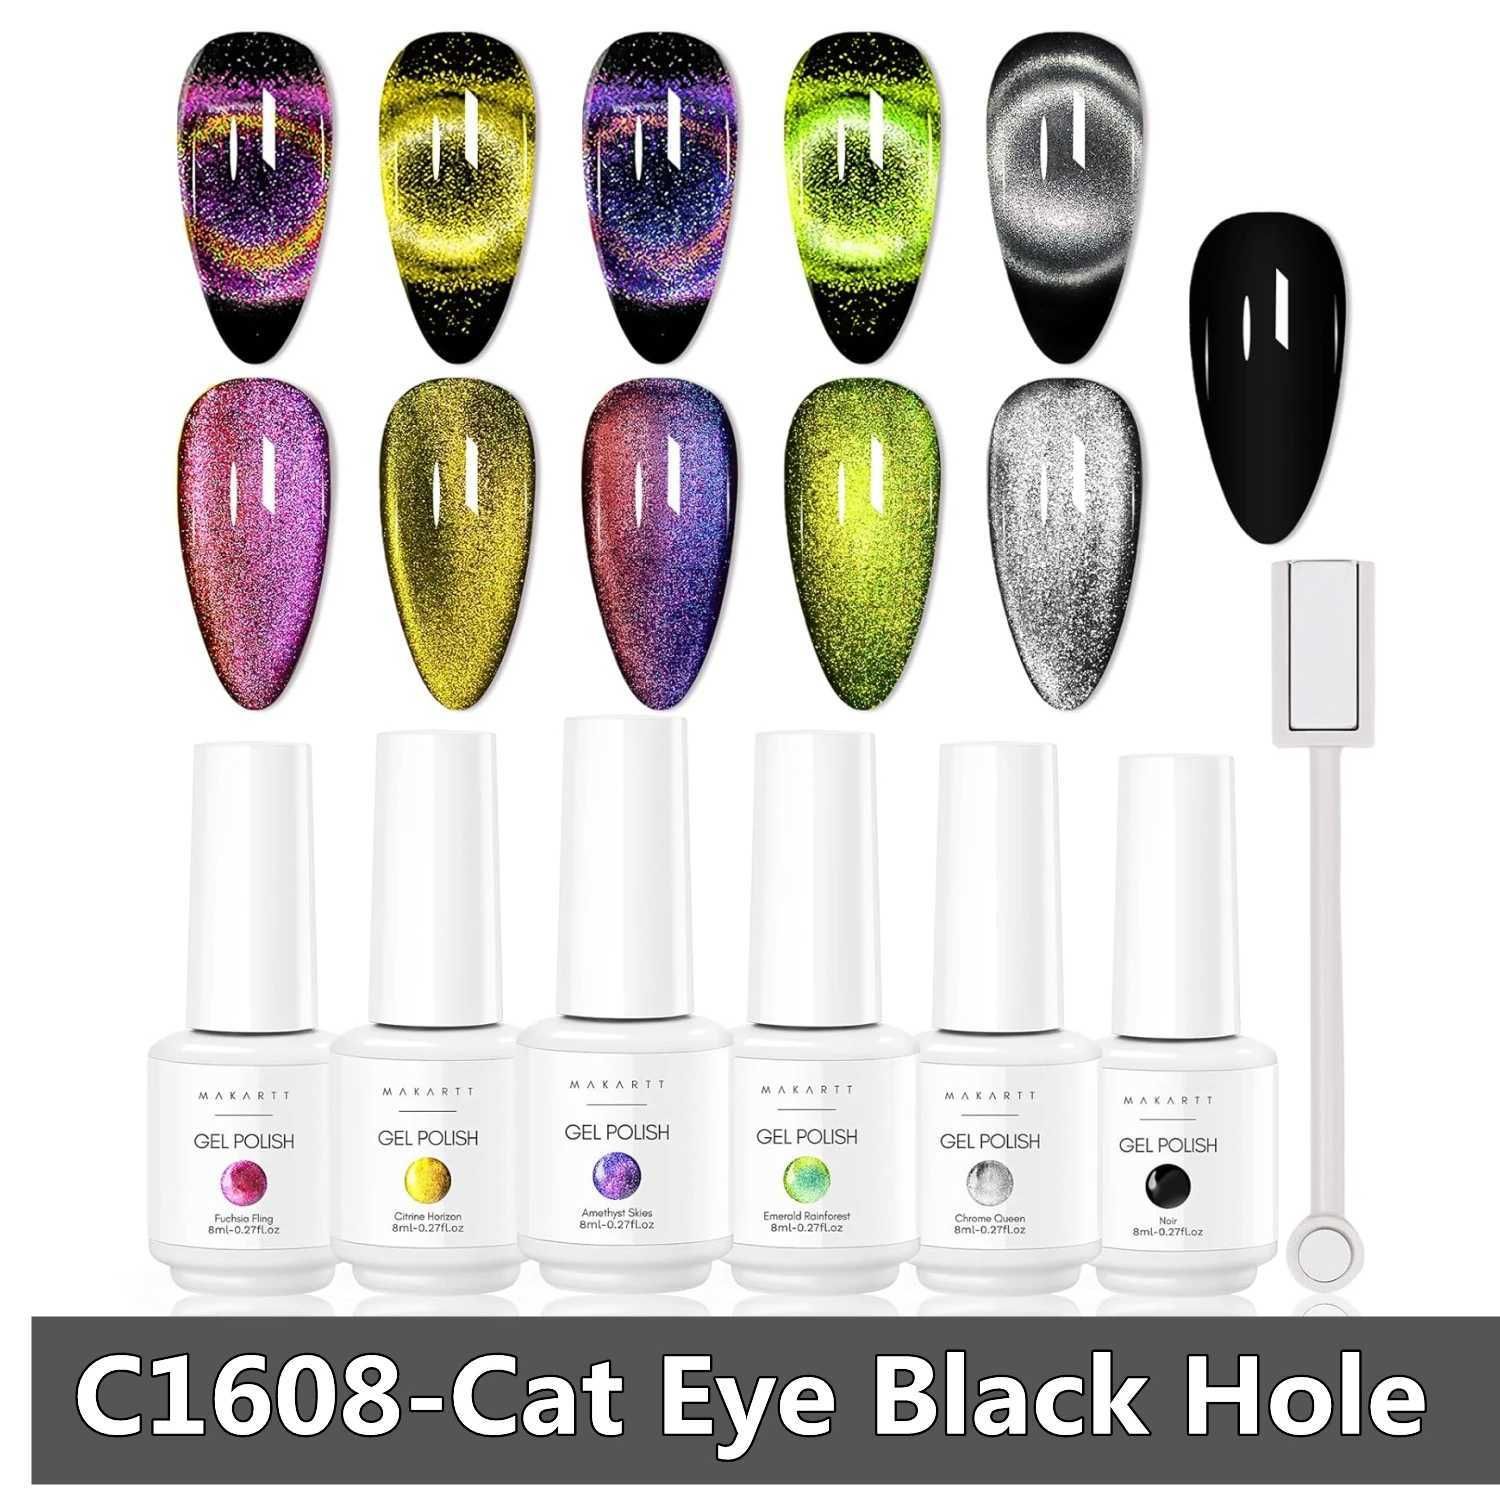 Gel oculare C1608-Cat